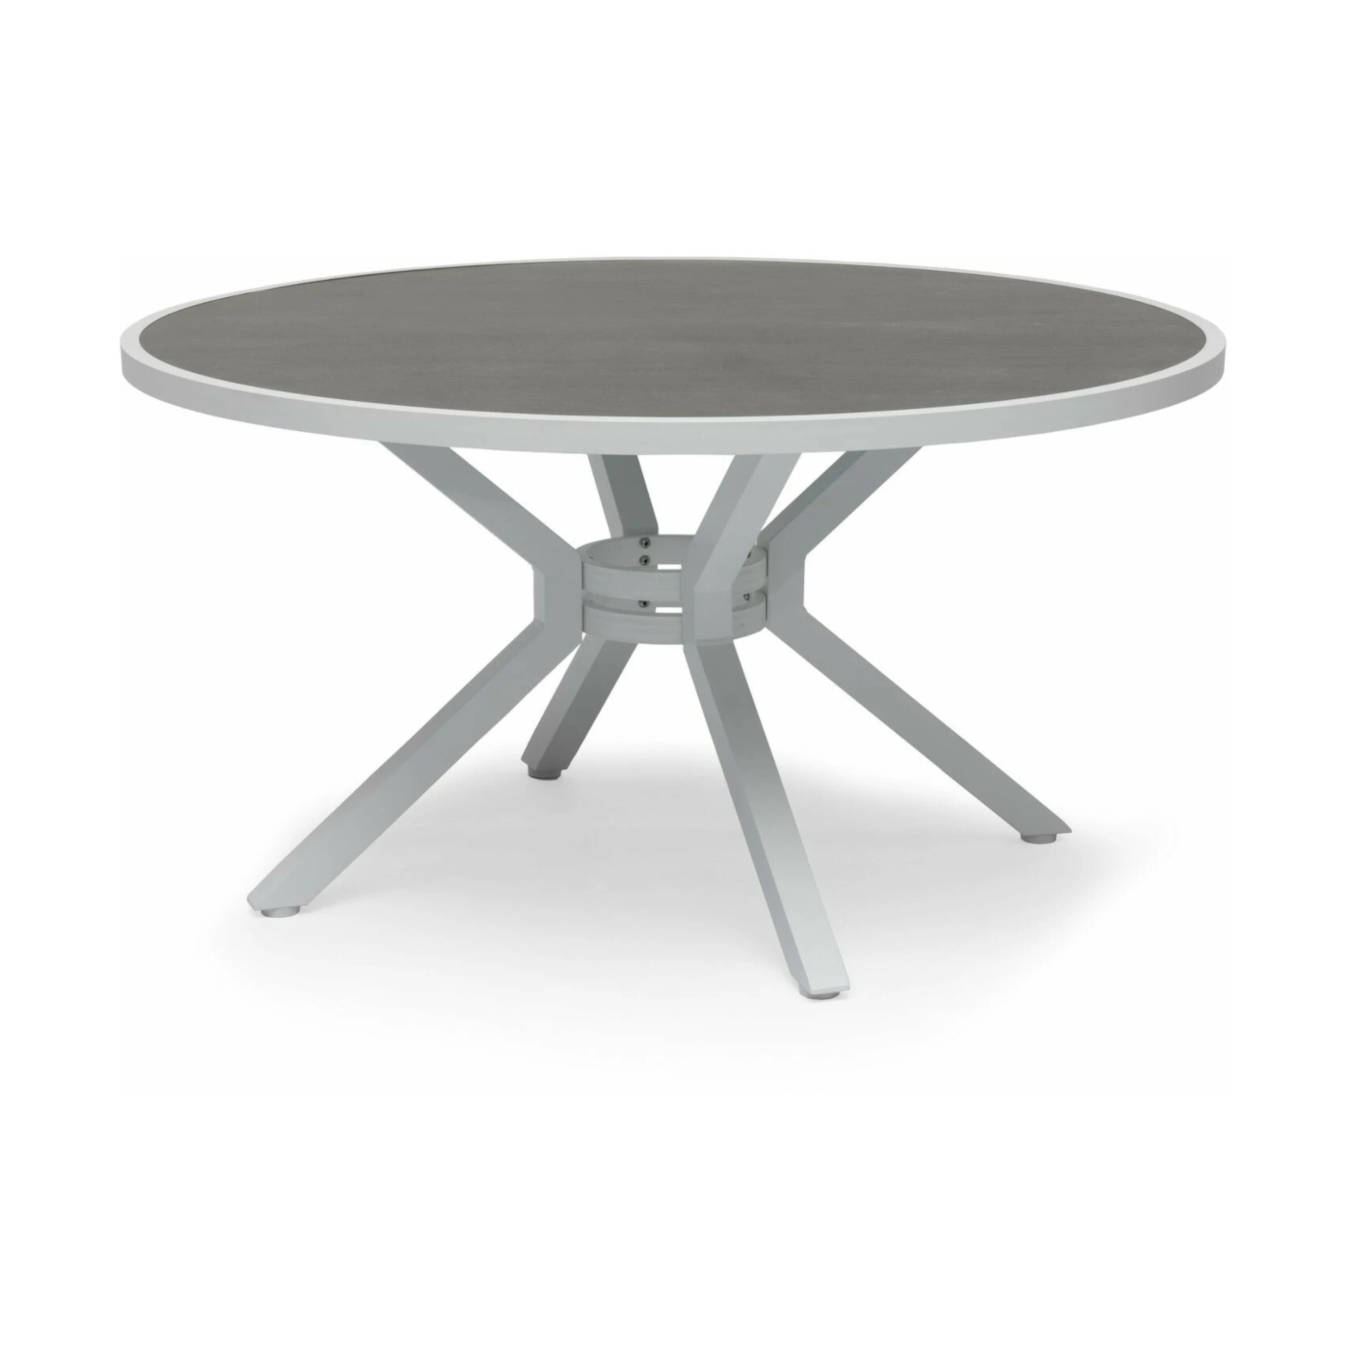 Hånger pyöreä pöytä 140, valkoinen/keramiikka